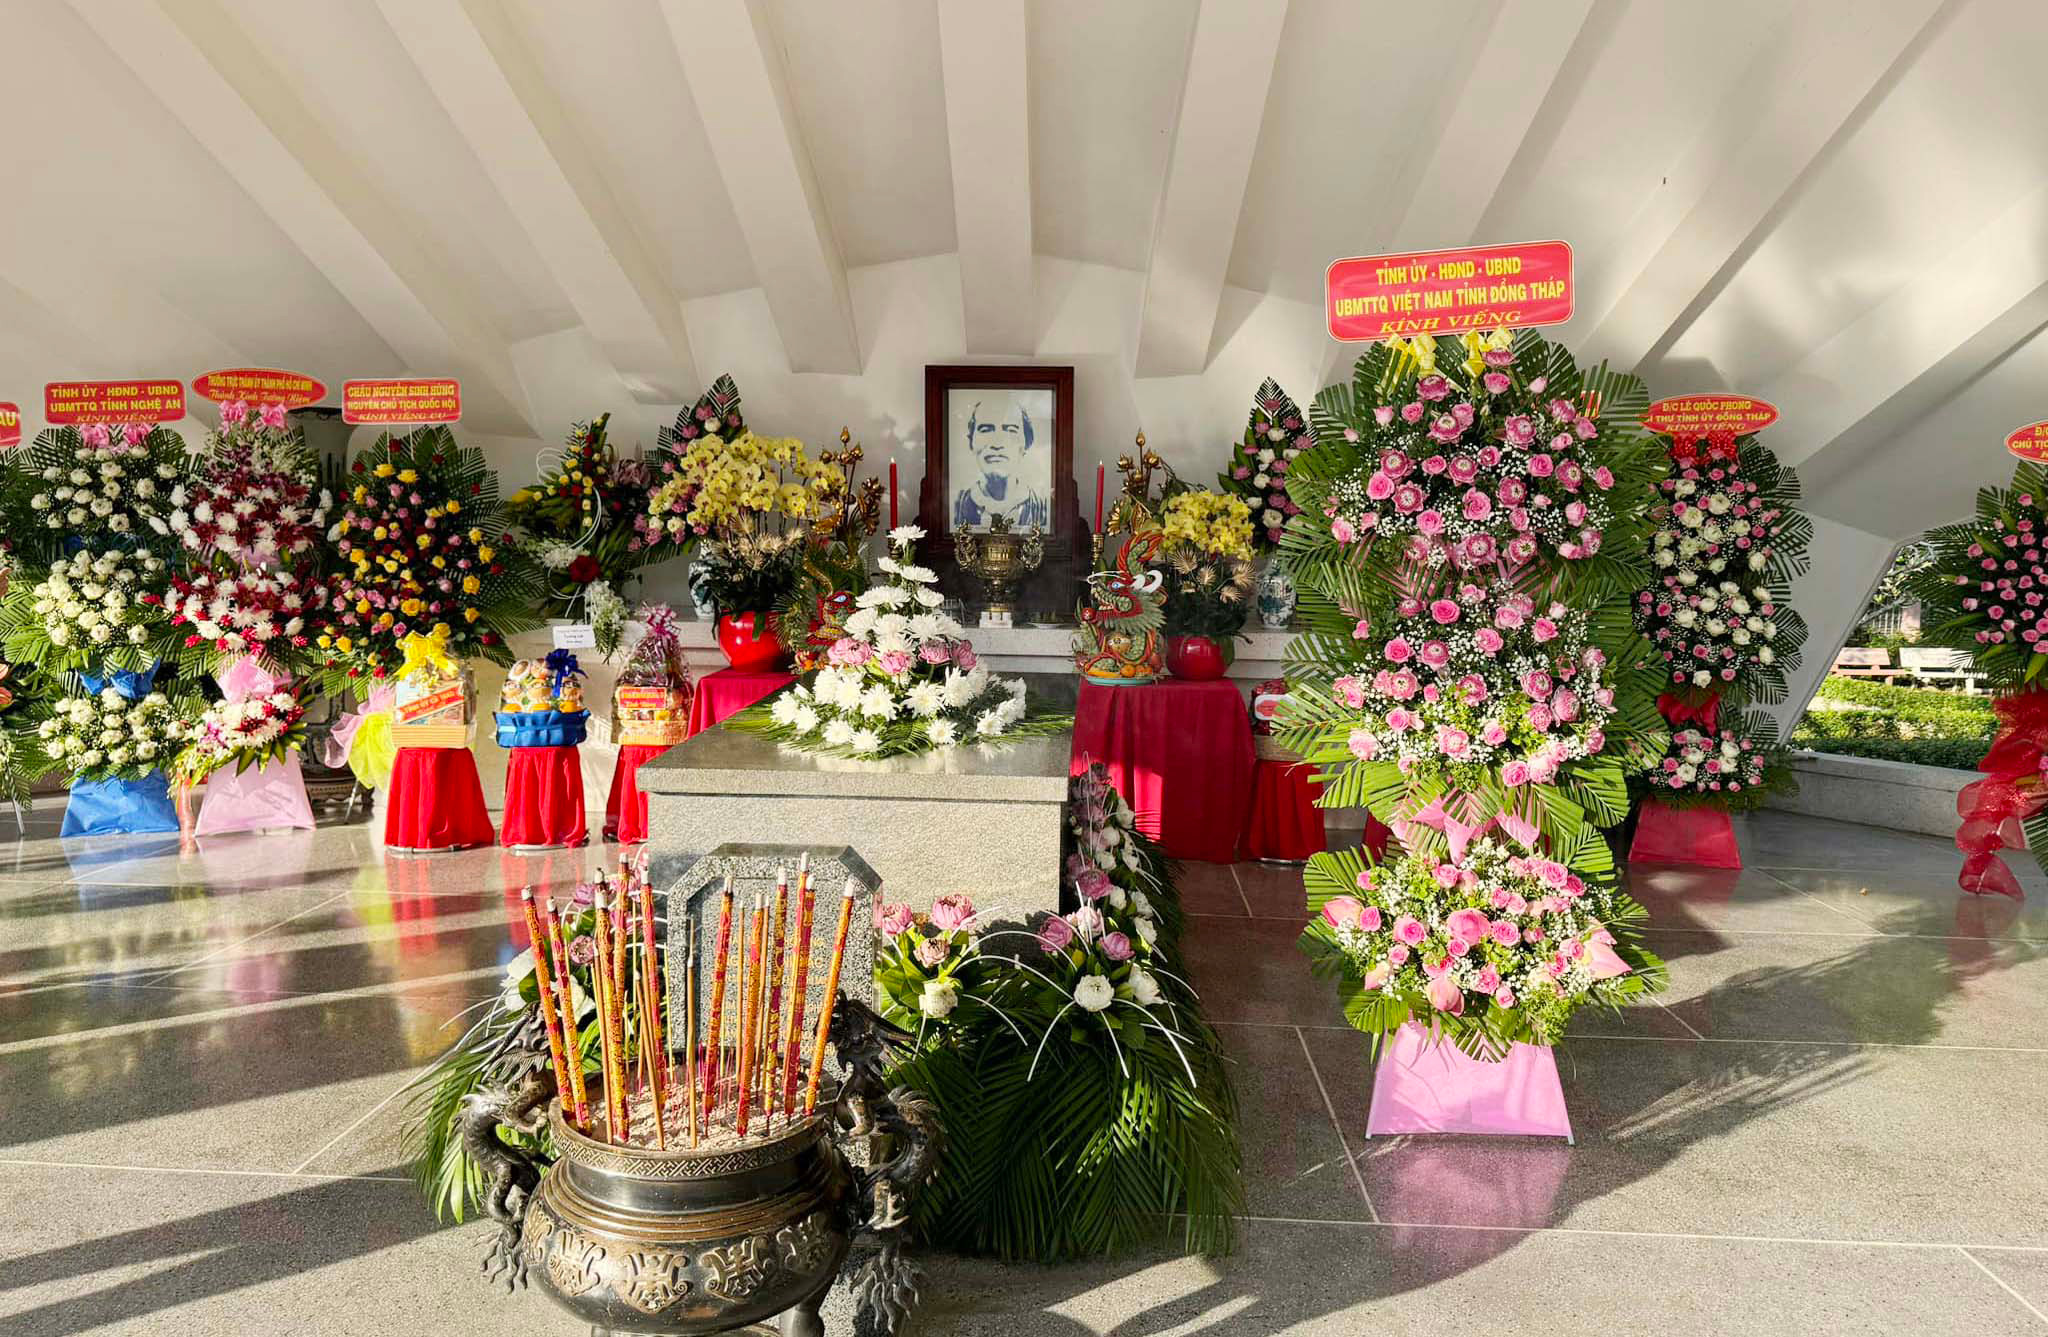 bna-Phần mộ cụ Phó bảng Nguyễn Sinh Sắc tại Cao Lãnh, Đồng Tháp.jpg